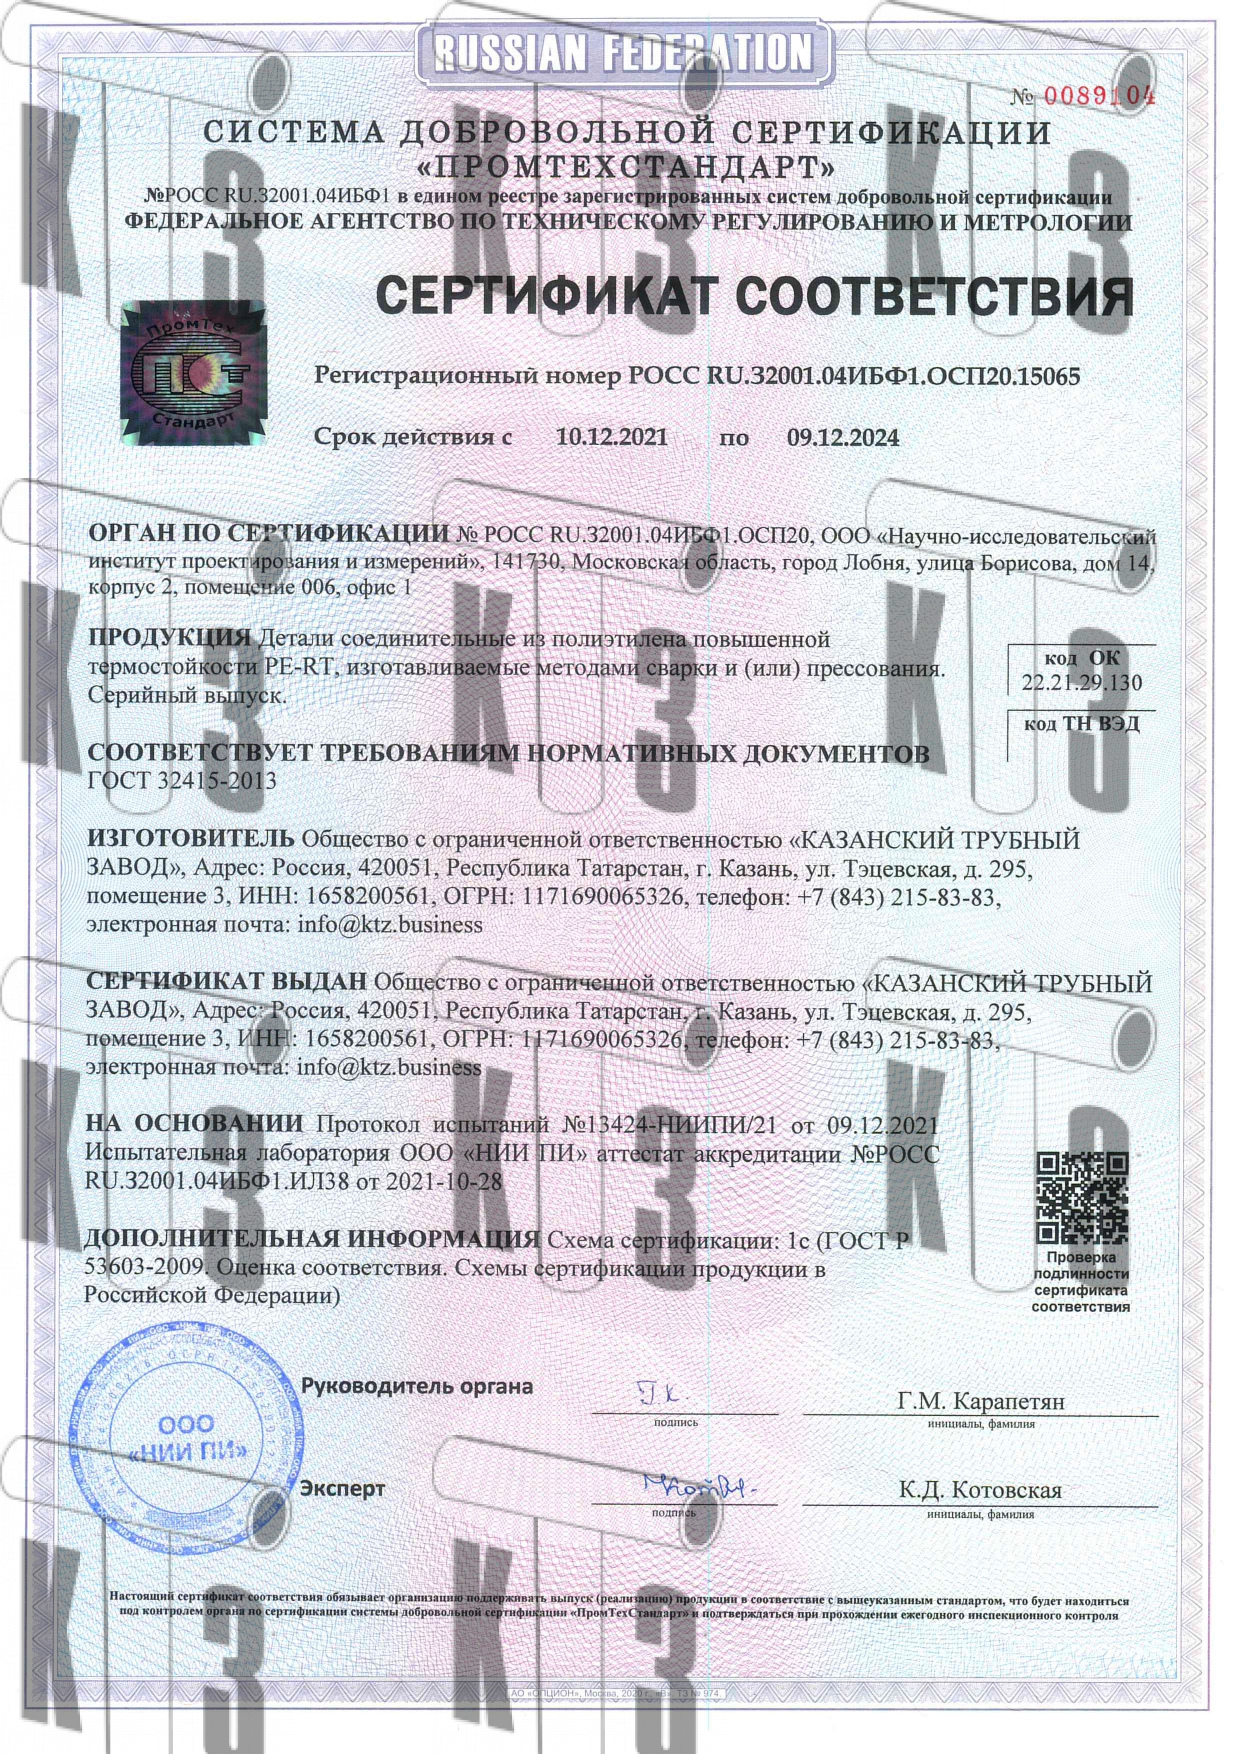 сертификат соответствия 0089104